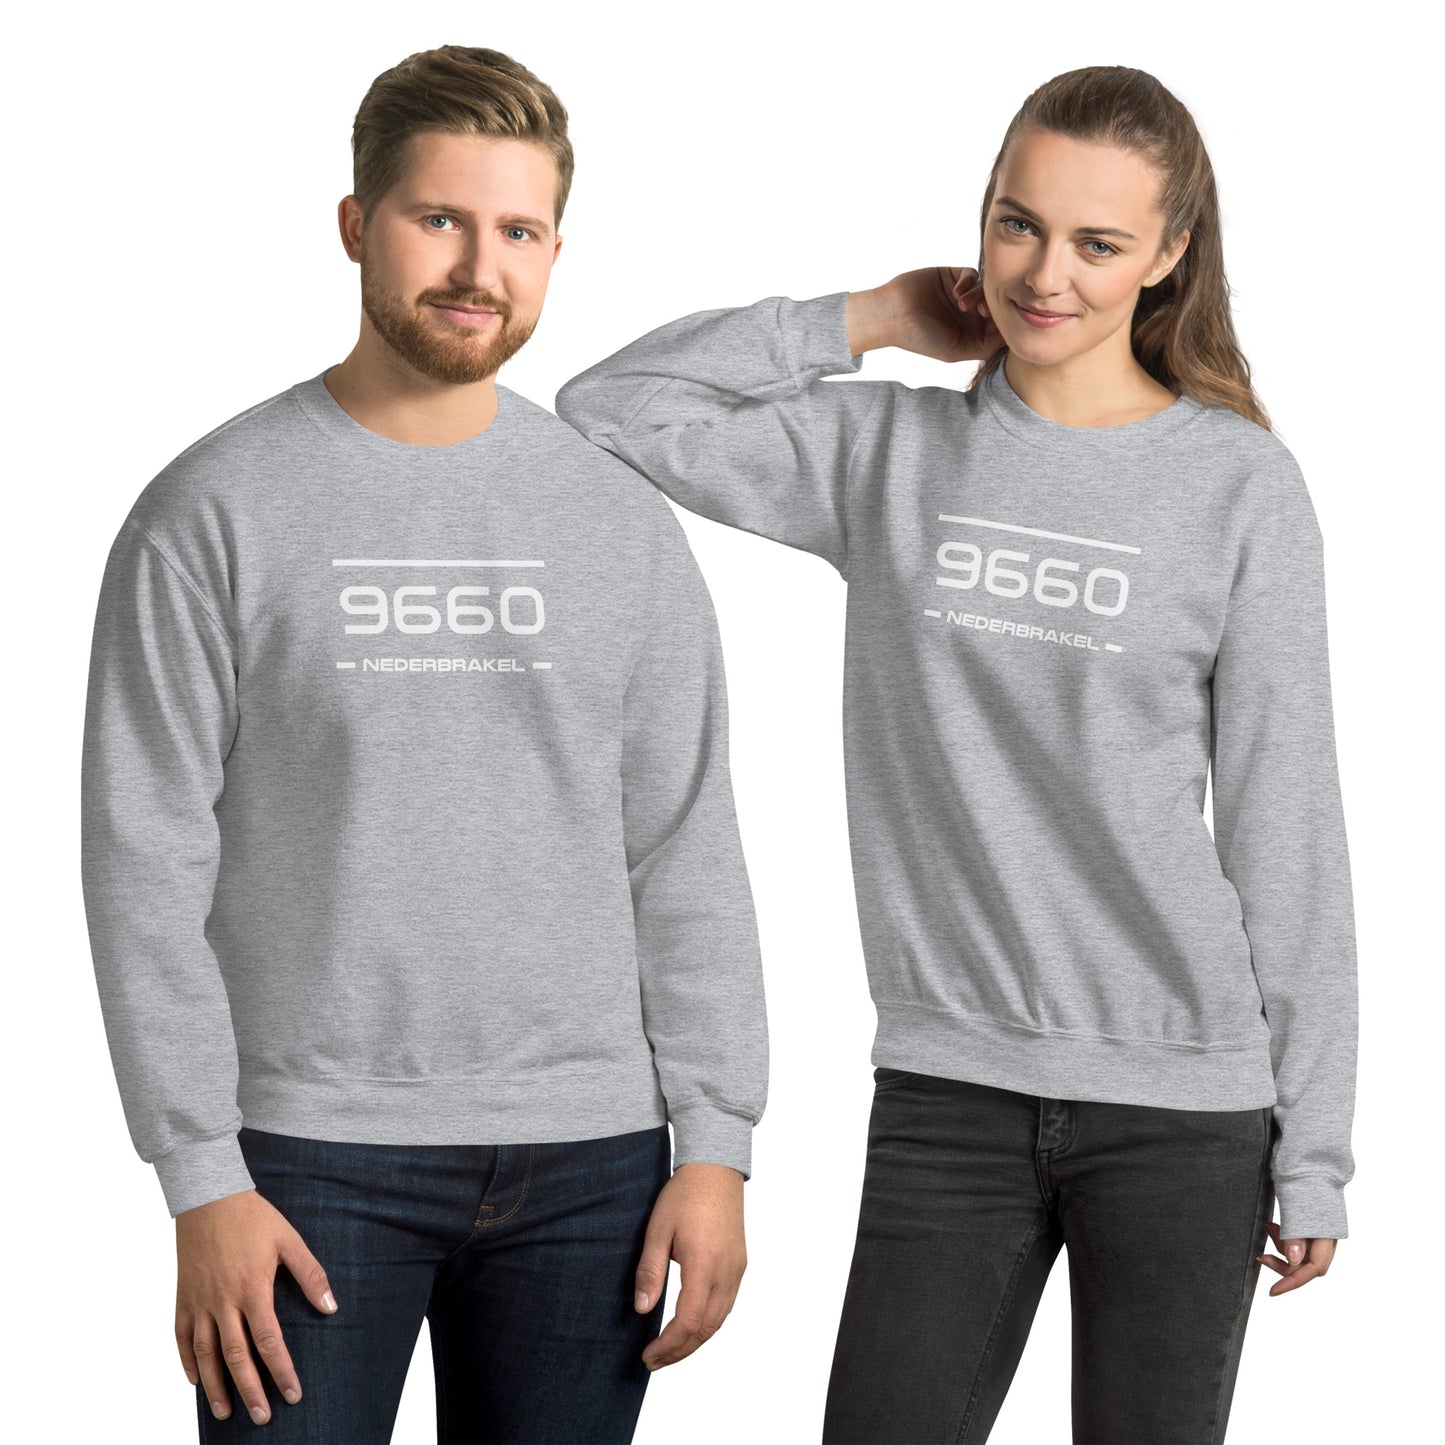 Sweater - 9660 - Nederbrakel (M/V)